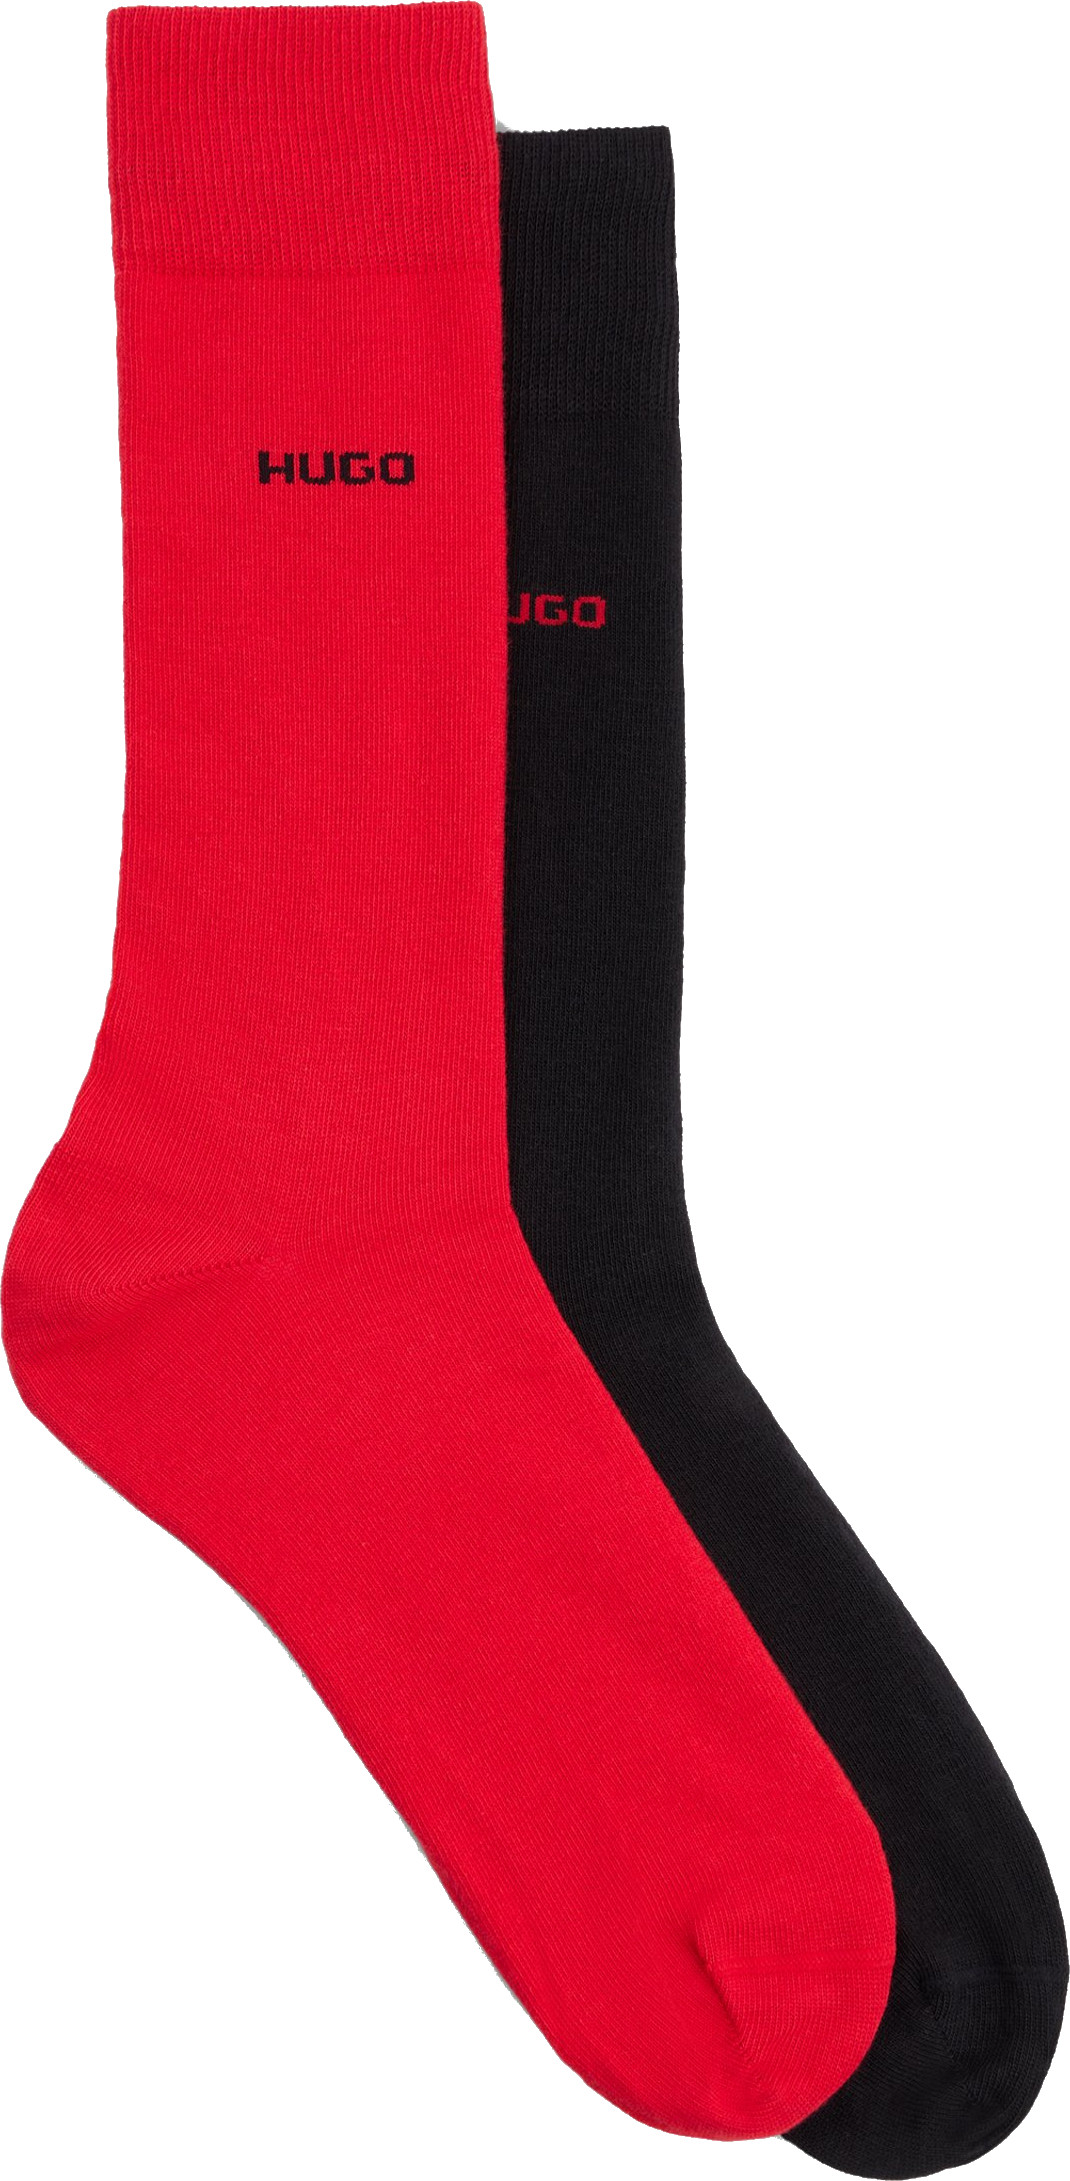 Hugo Boss 2 PACK - pánské ponožky HUGO 50468099-693 43-46